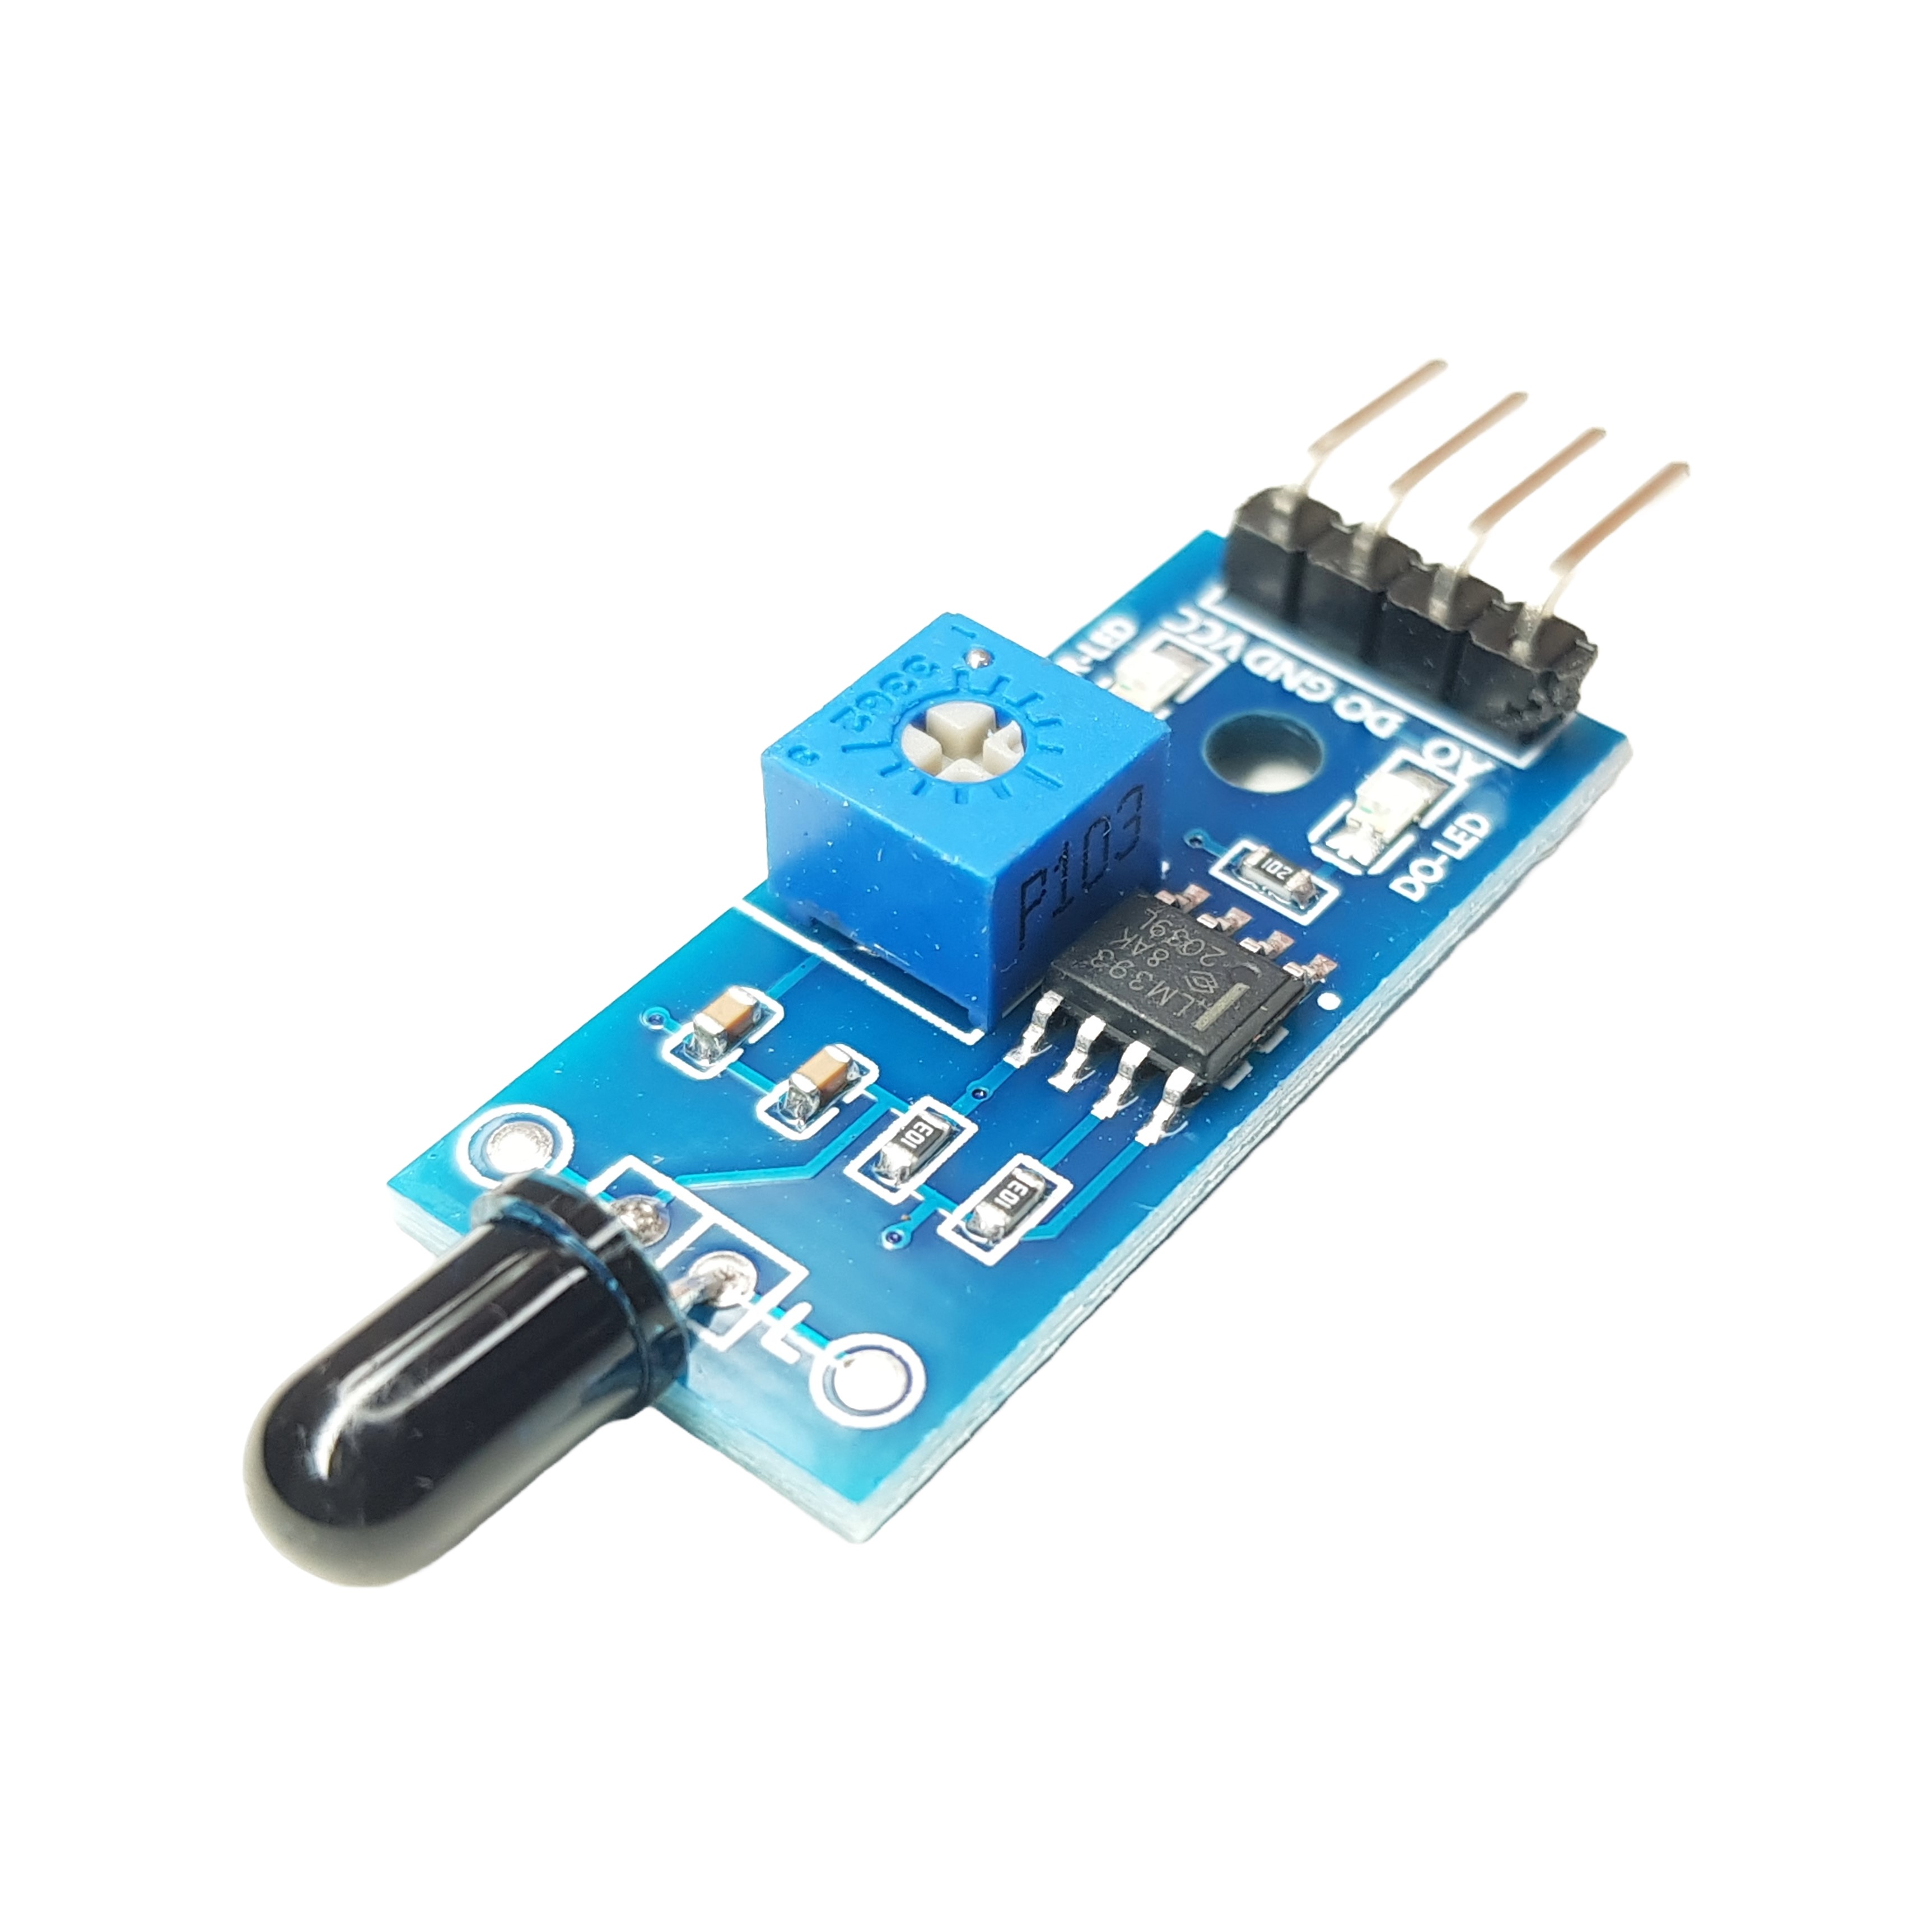 Infrared Fire Sensor for Arduino, ESP32, ESP8266, Raspberry Pi, 5 pieces